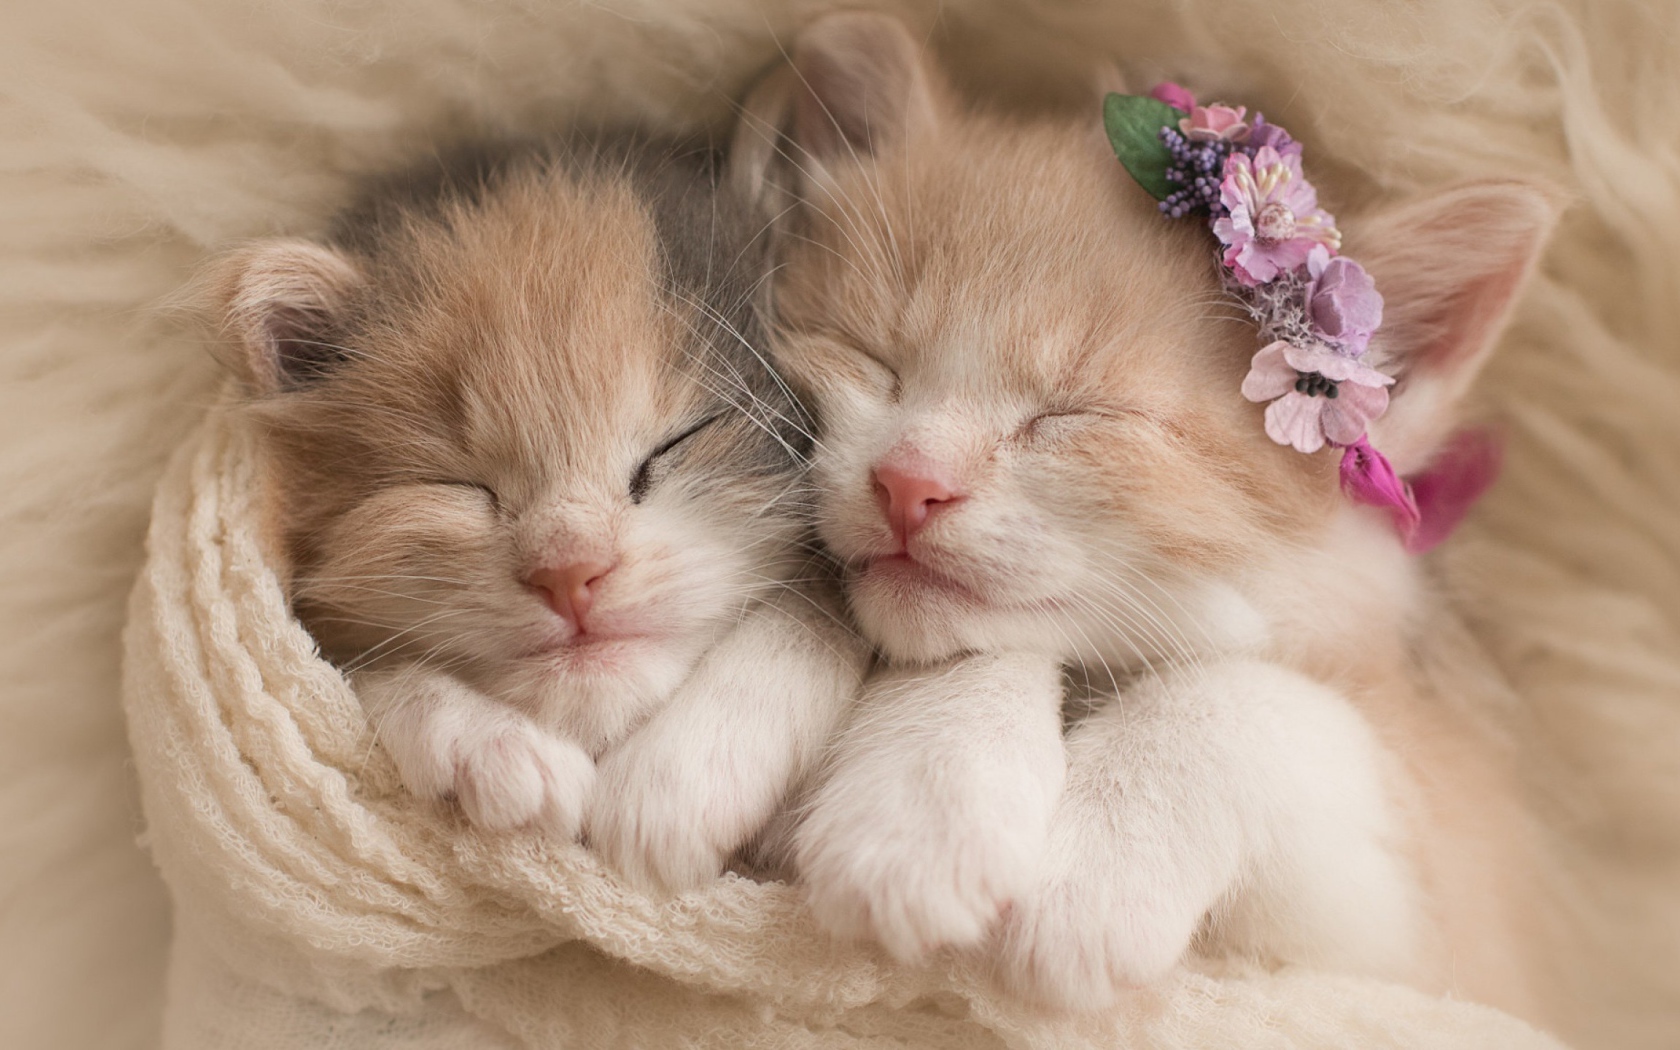 Two cute little kitten